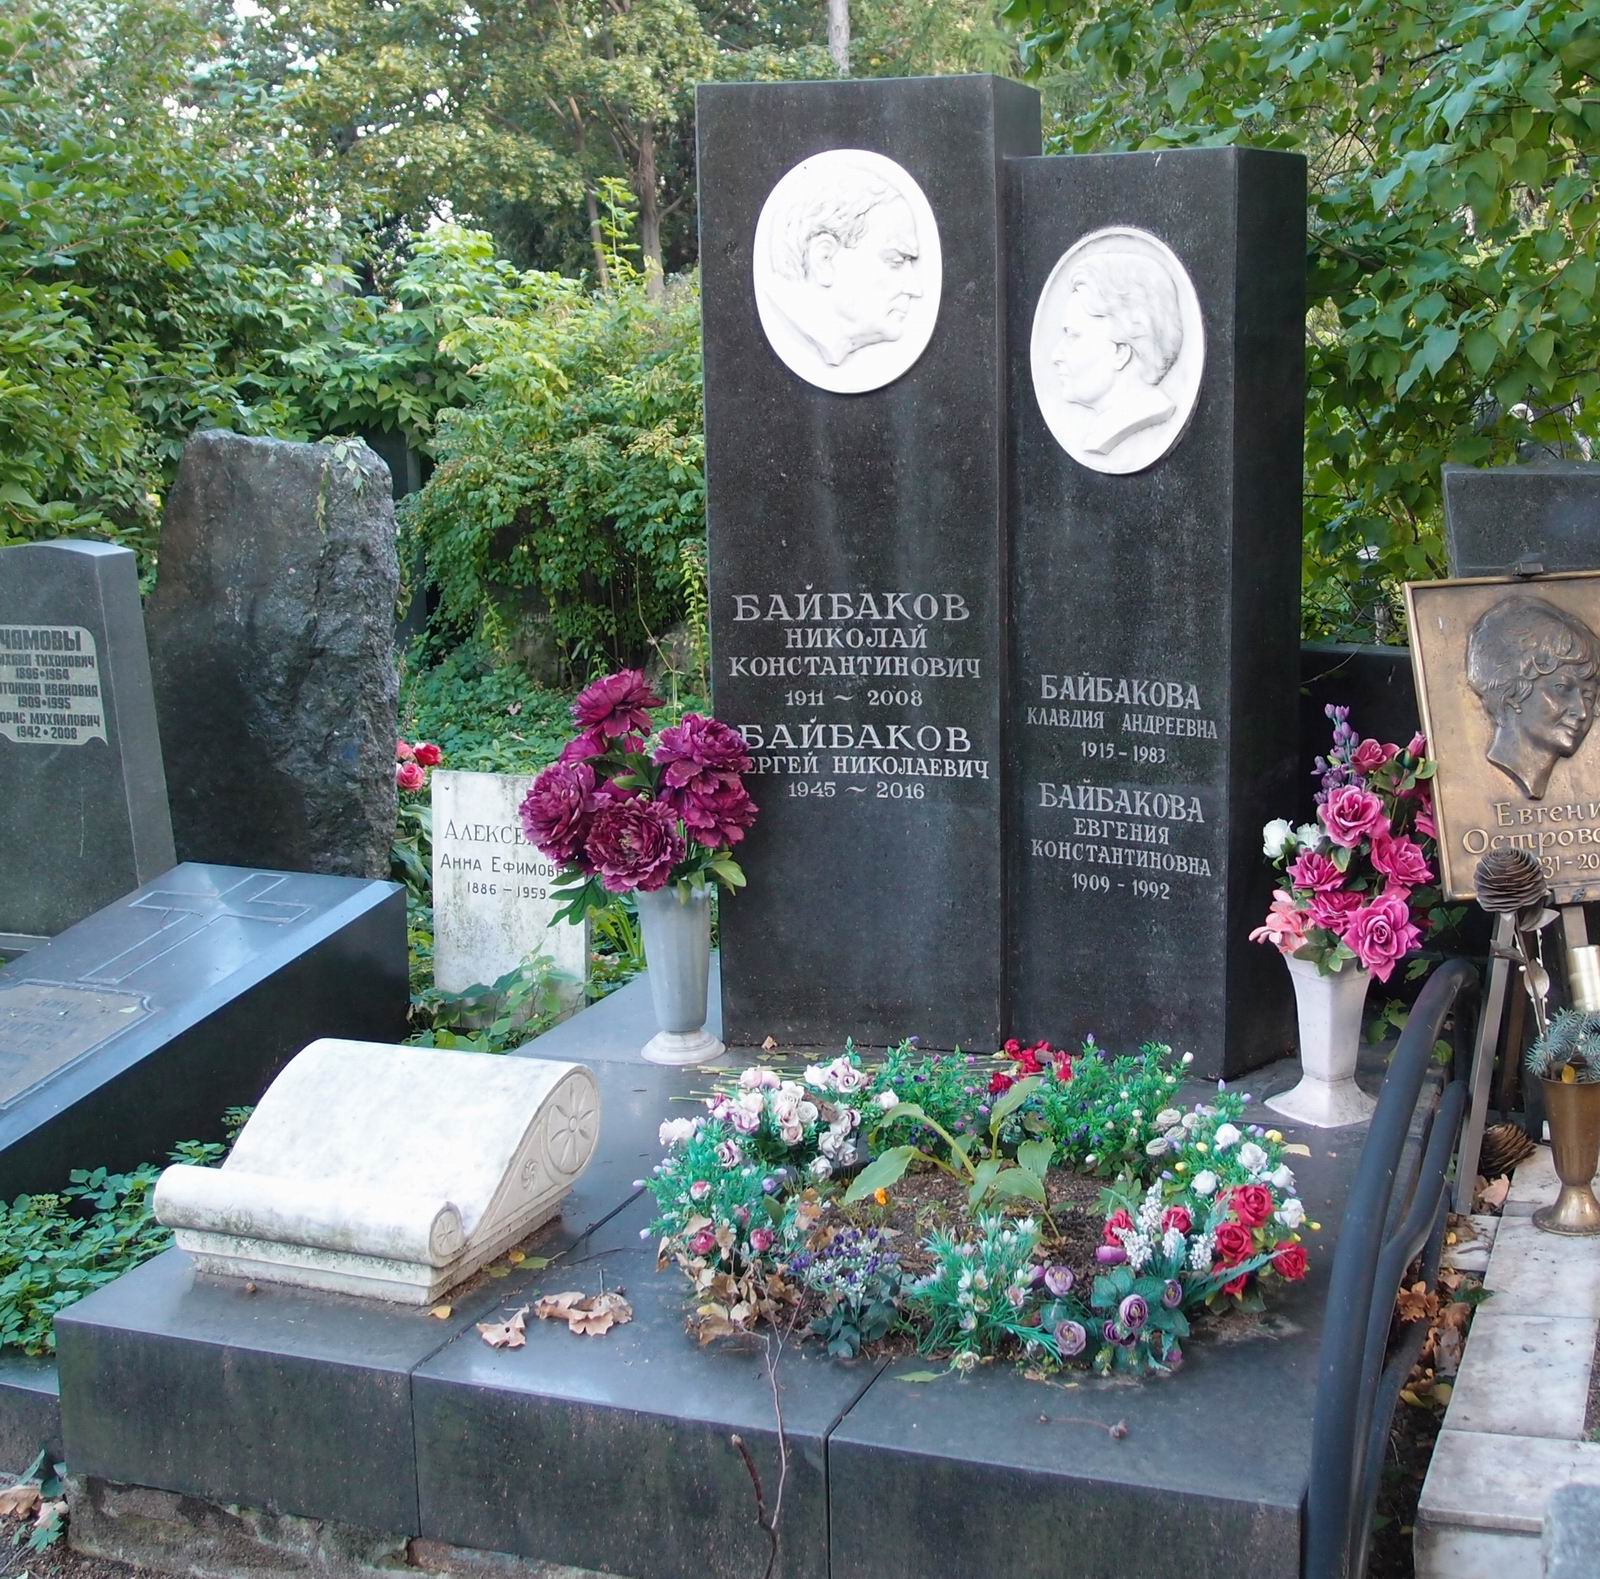 Памятник на могиле Байбакова Н.К. (1911-2008), на Новодевичьем кладбище (3-10-7). Нажмите левую кнопку мыши чтобы увидеть фрагмент памятника.